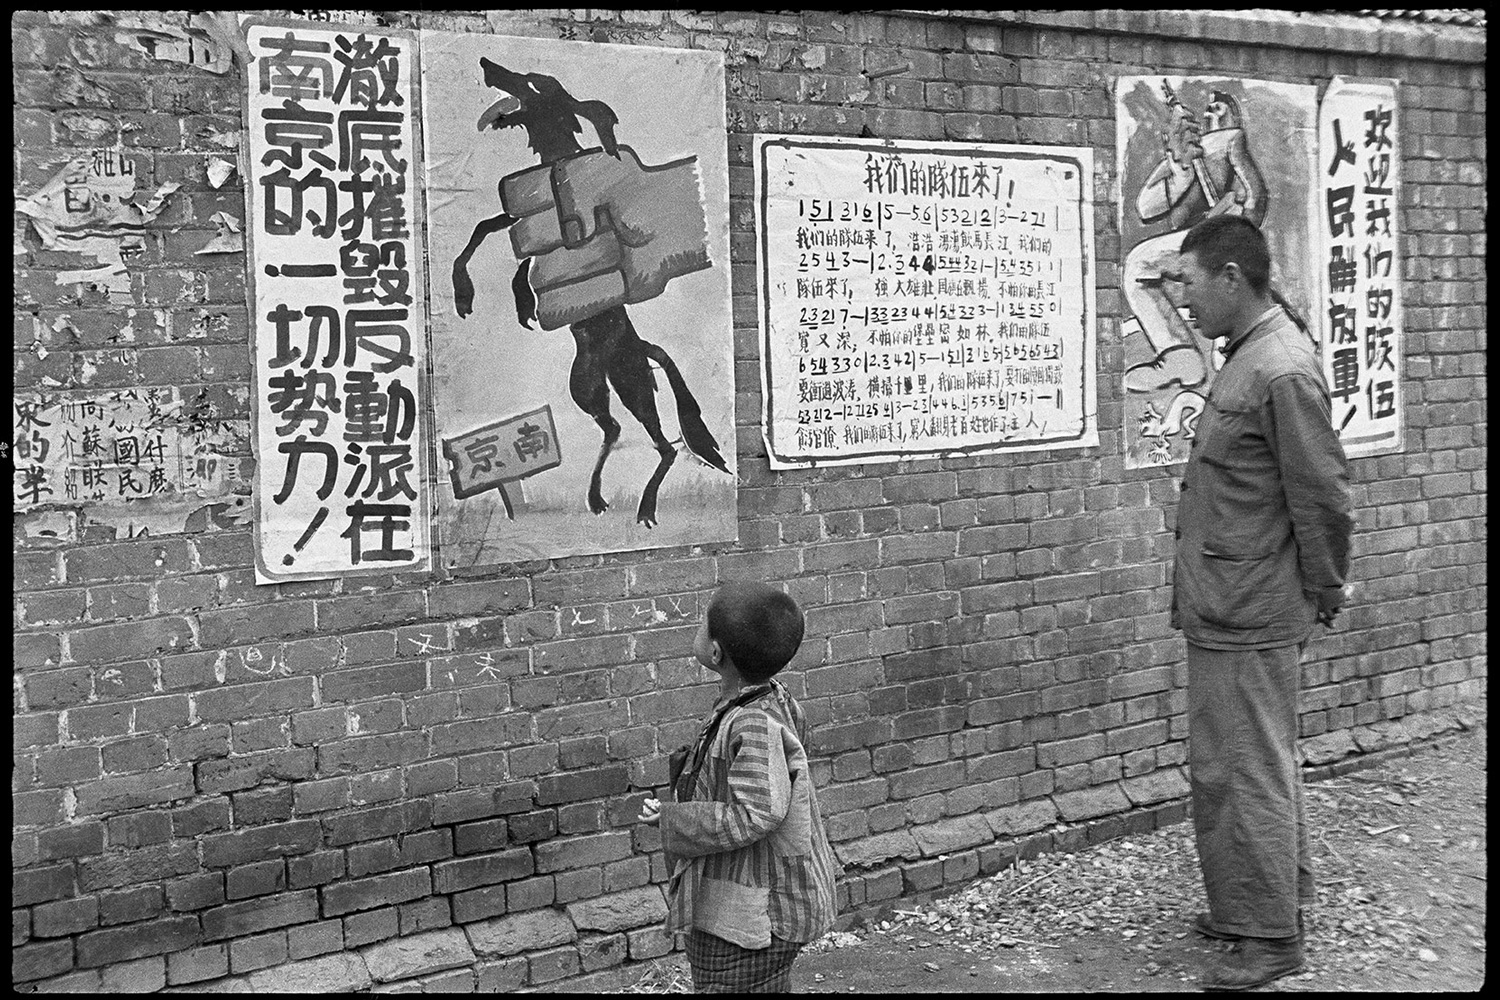 Henry Cartier-Bresson - Nanchino, 24 aprile 1949 Un poster di propaganda dipinto a mano.